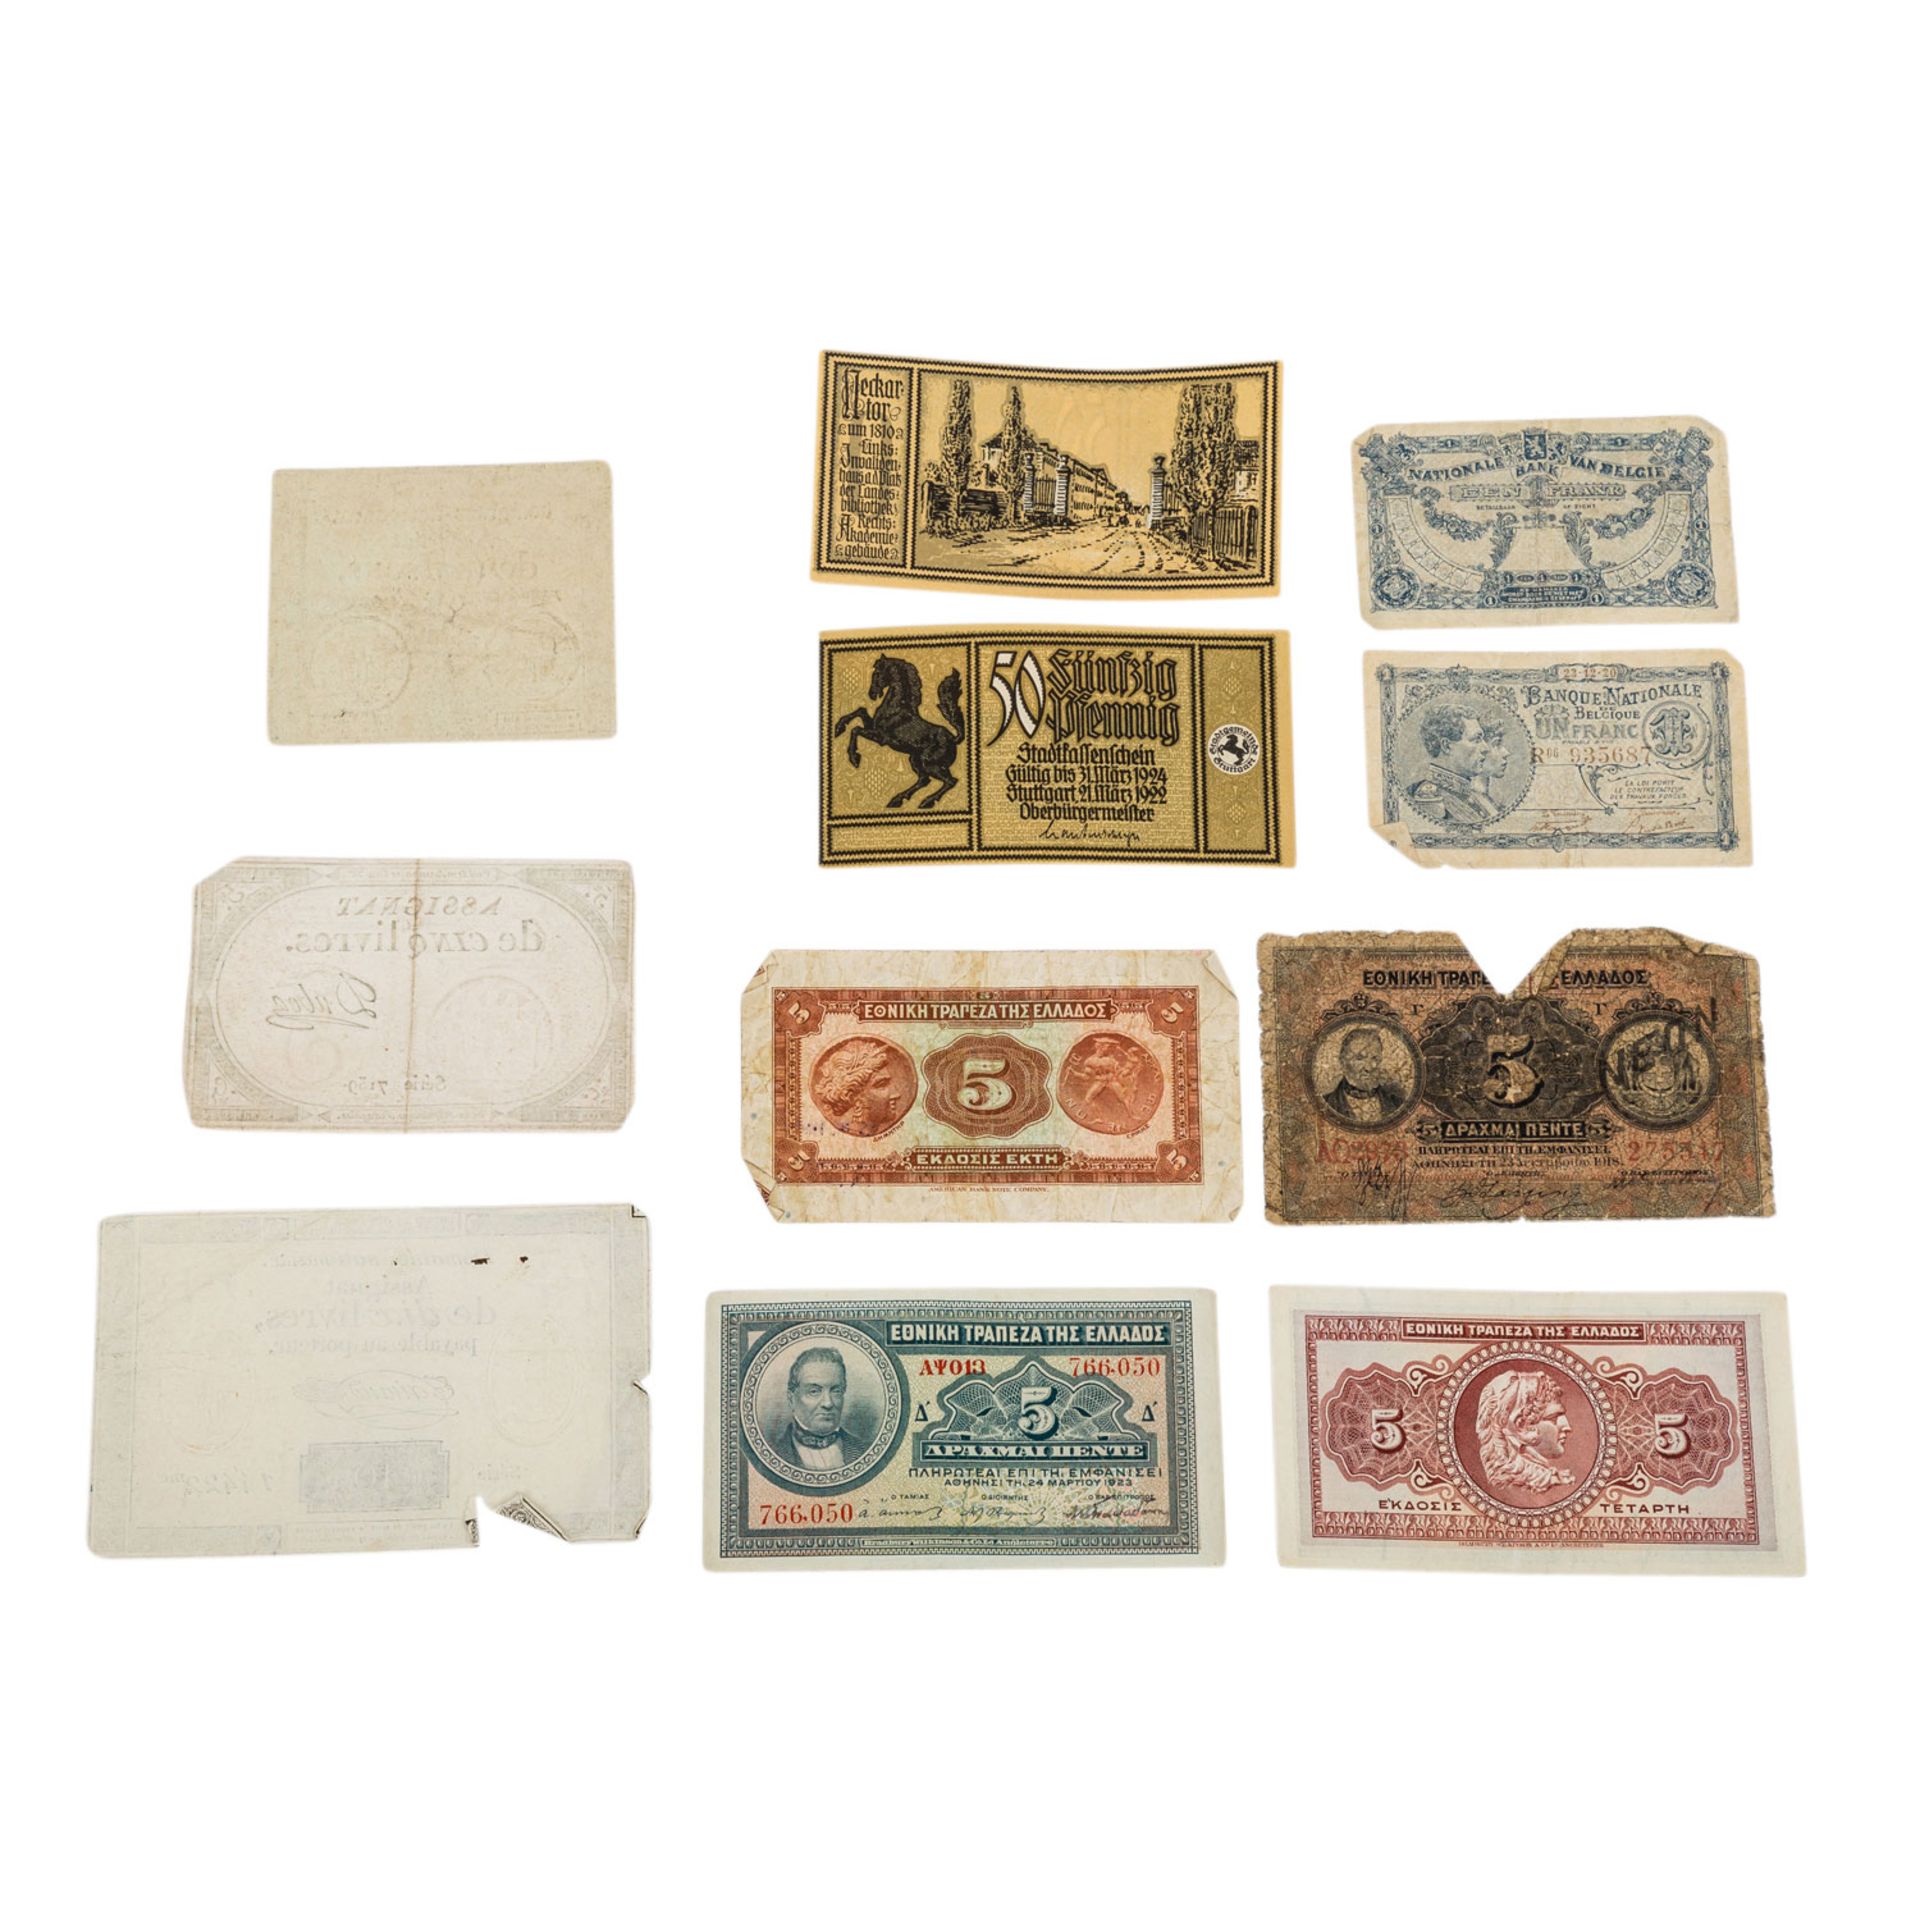 Kleines Banknotenkonvolut - Weimarer Republik, Frankreich nach der Französischen Revo - Image 4 of 4